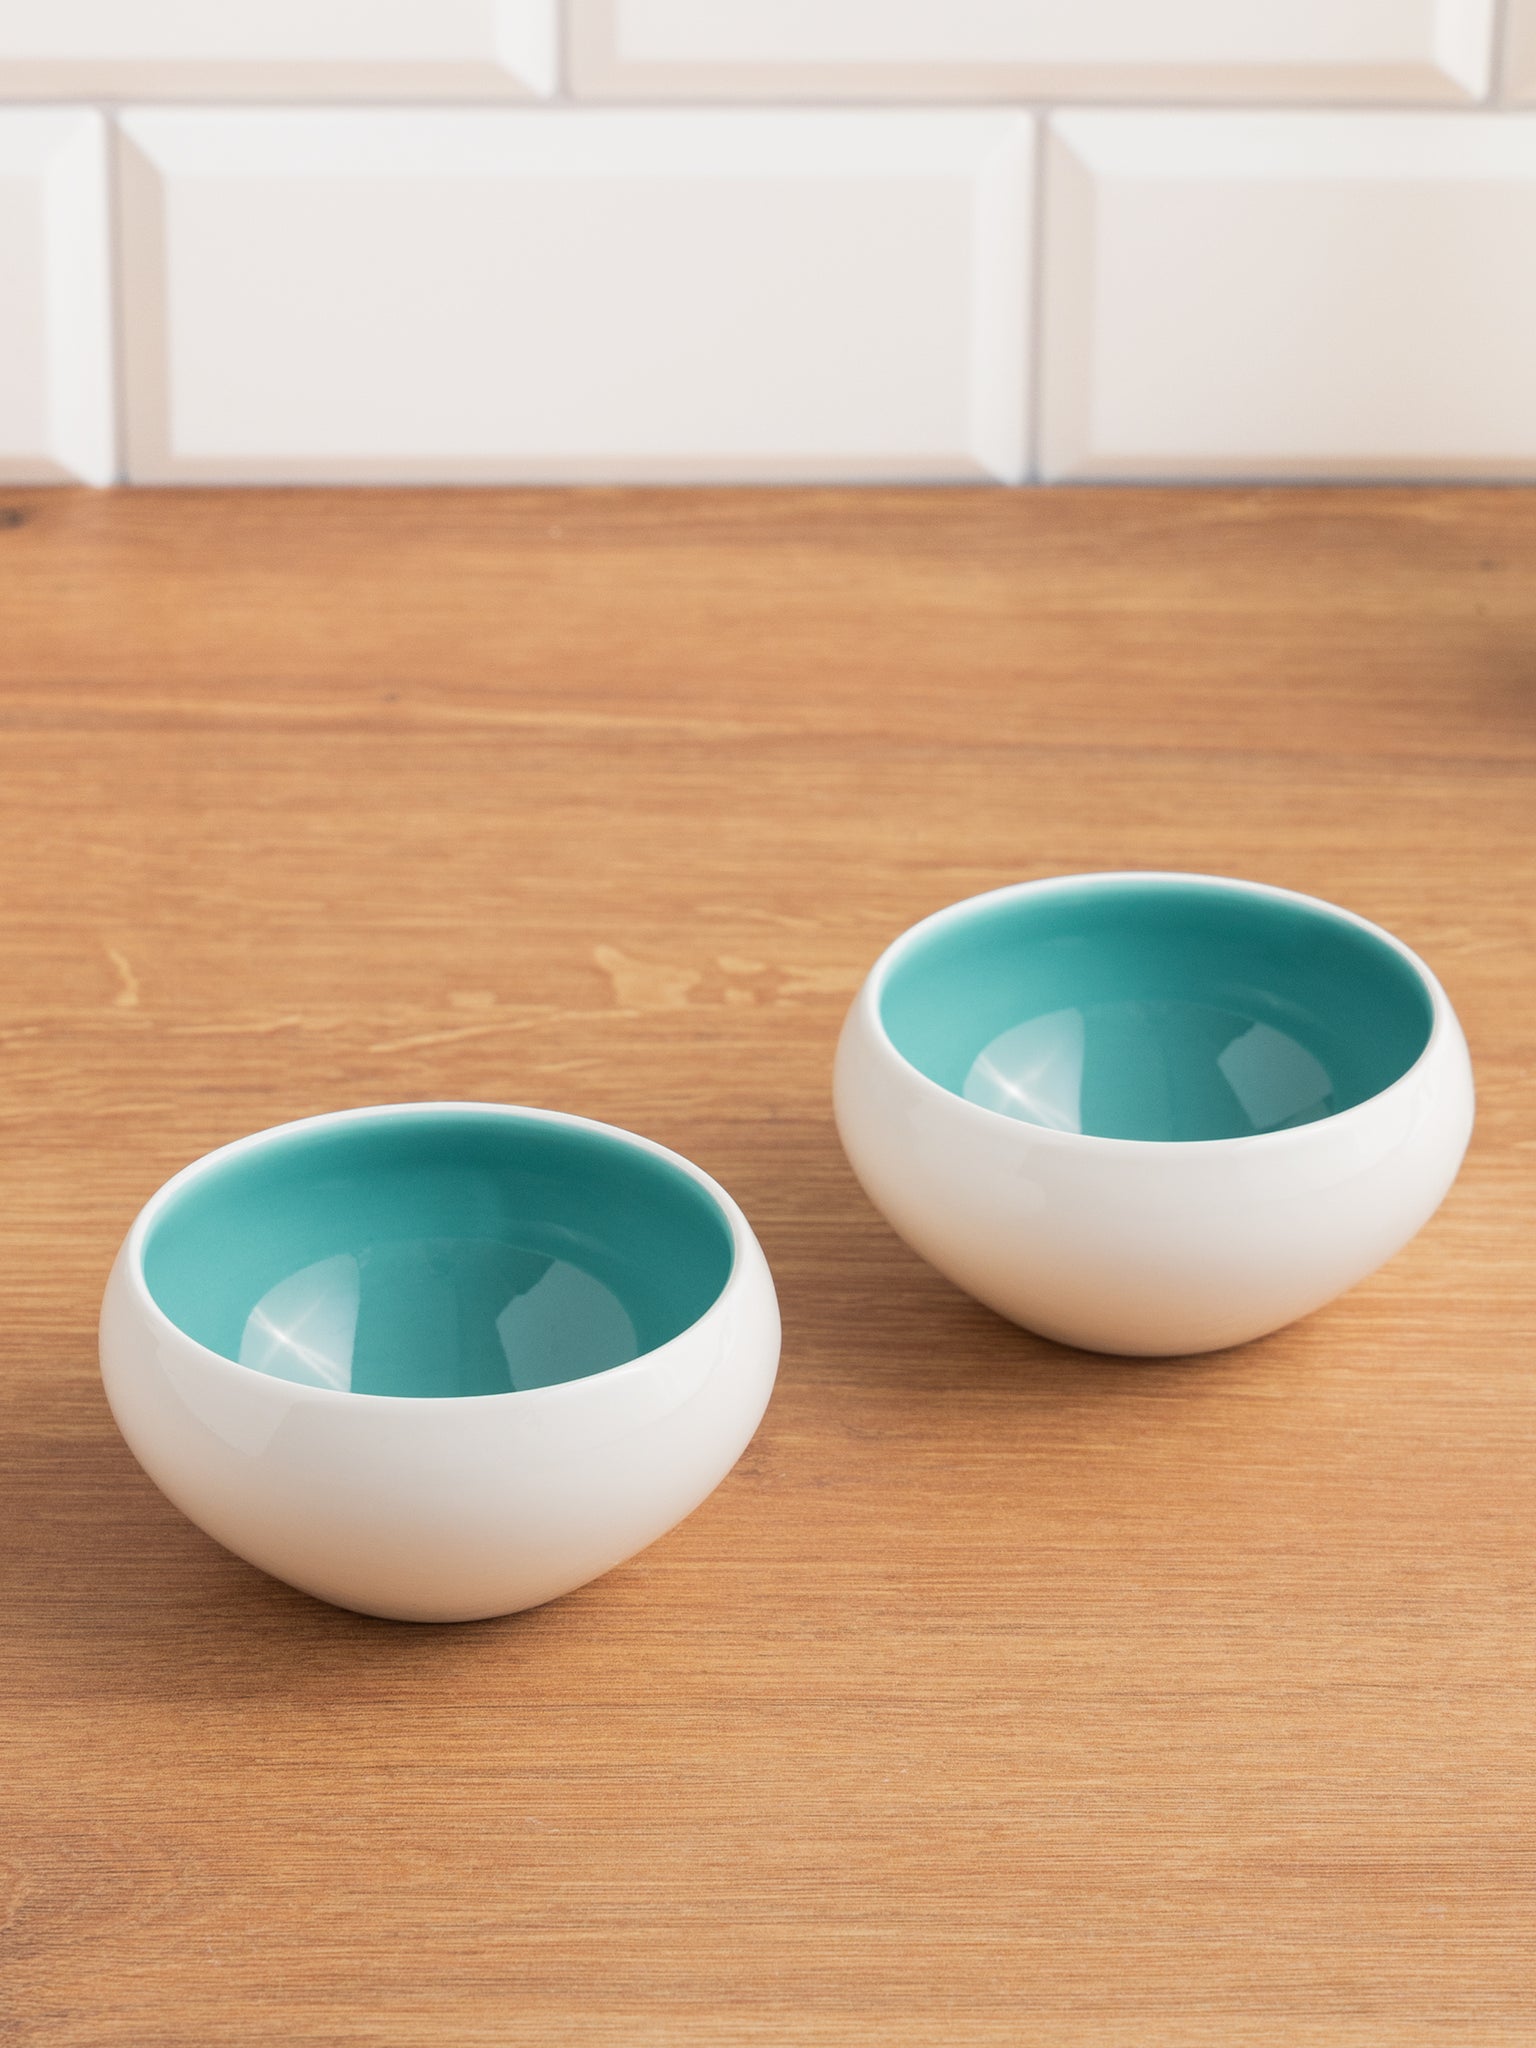 Porcelain Ramekins Set Of 6 - Bowls for Creme Brulee, Baking